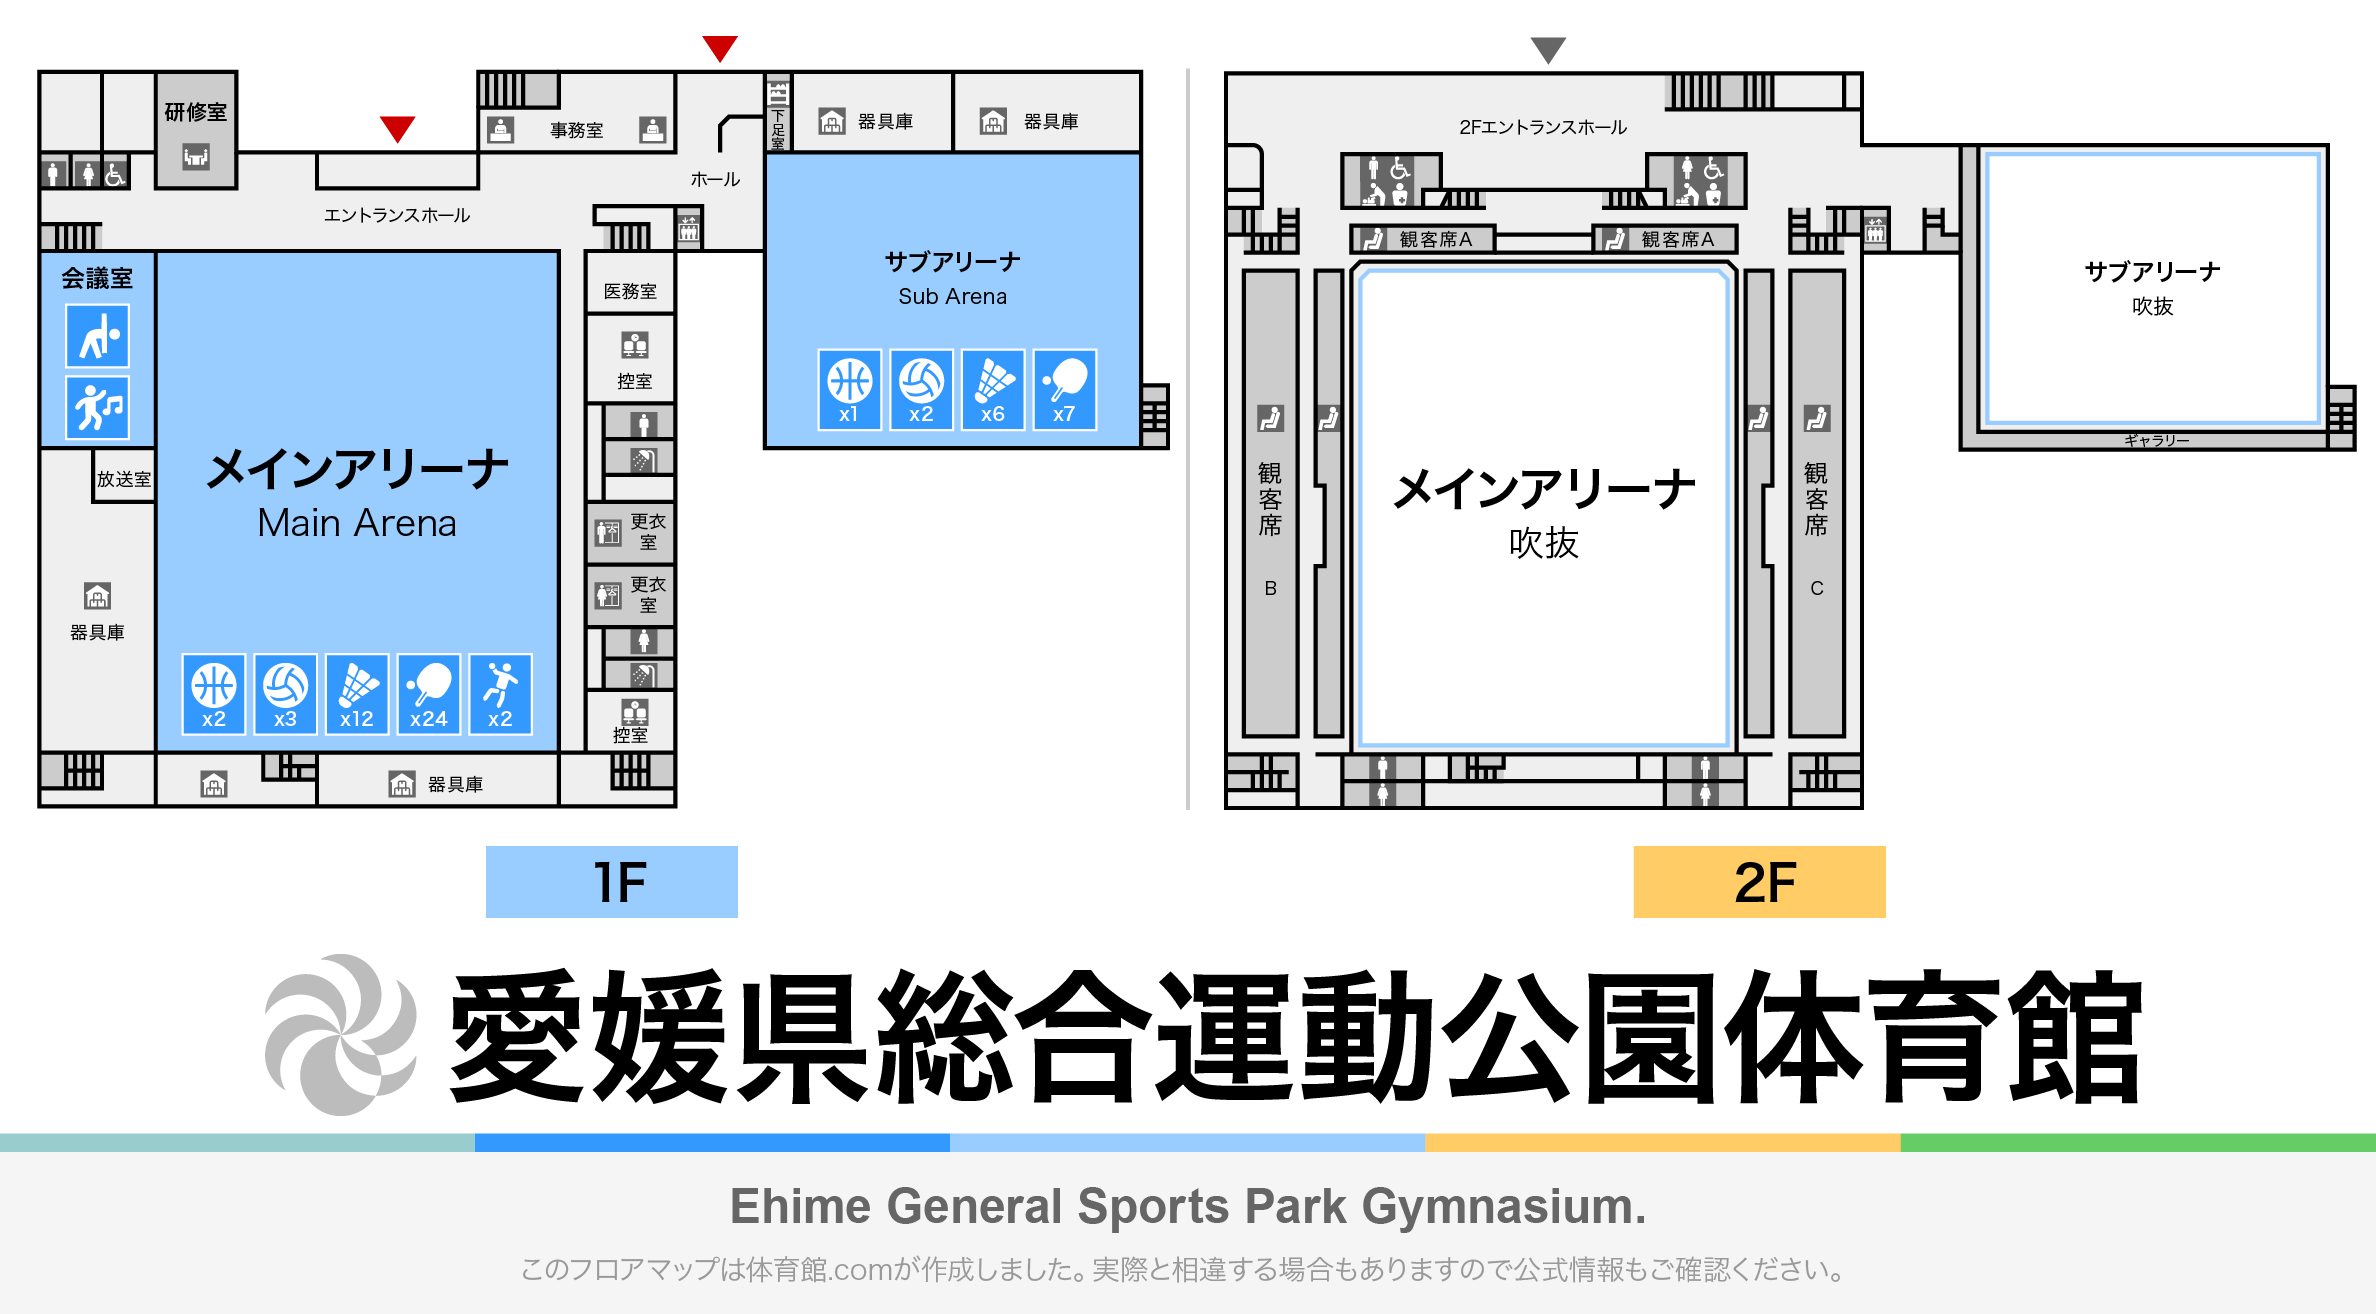 愛媛県総合運動公園体育館のフロアマップ・体育館